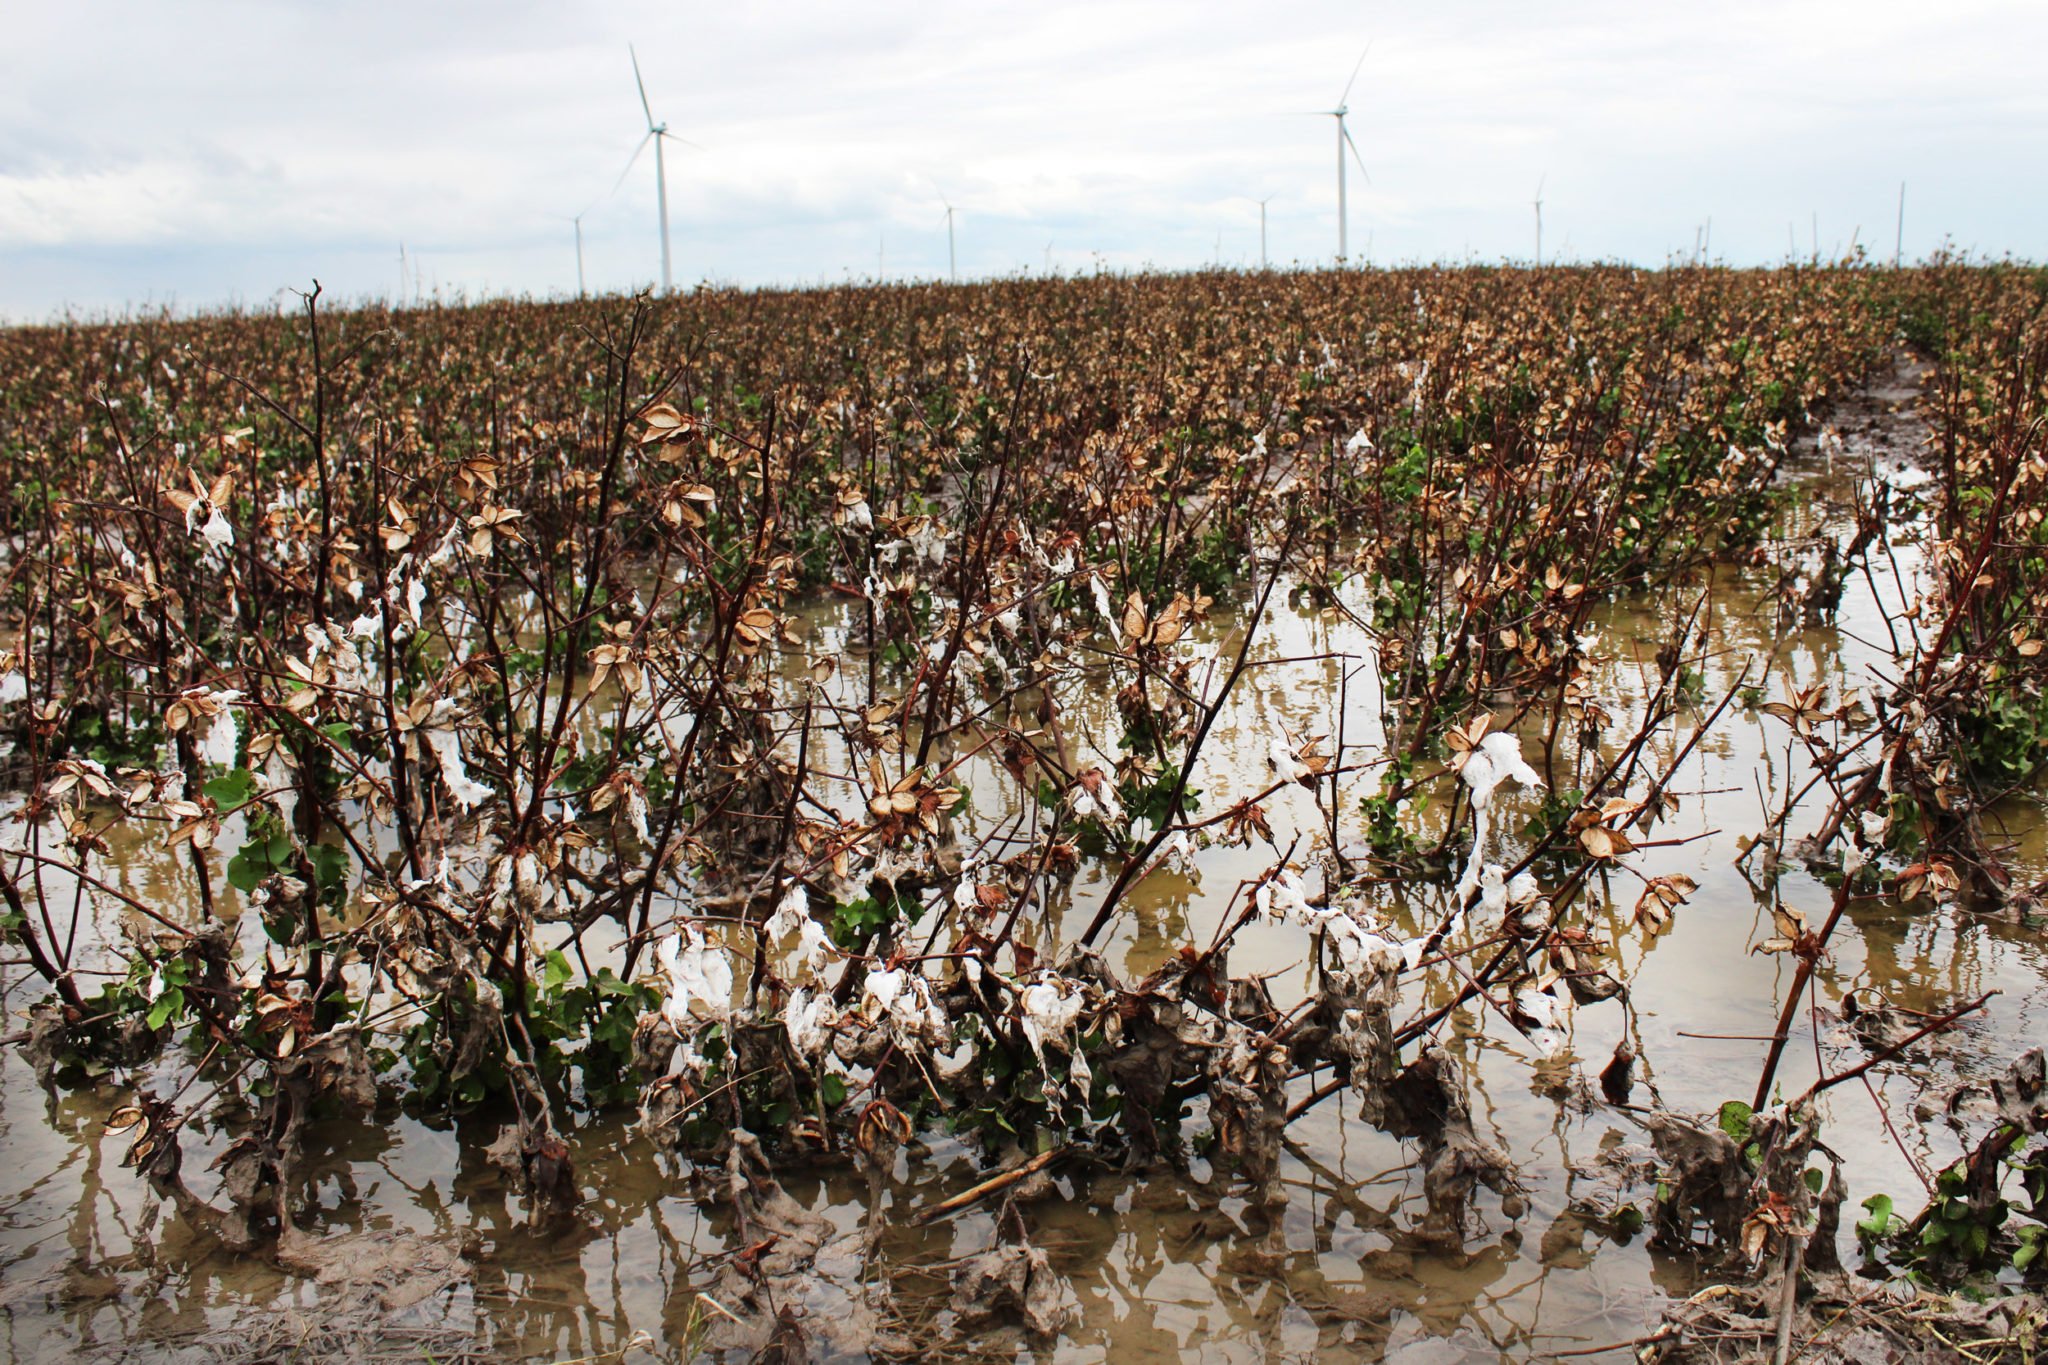 Unpicked cotton sits in a flooded field near Bluntzer.